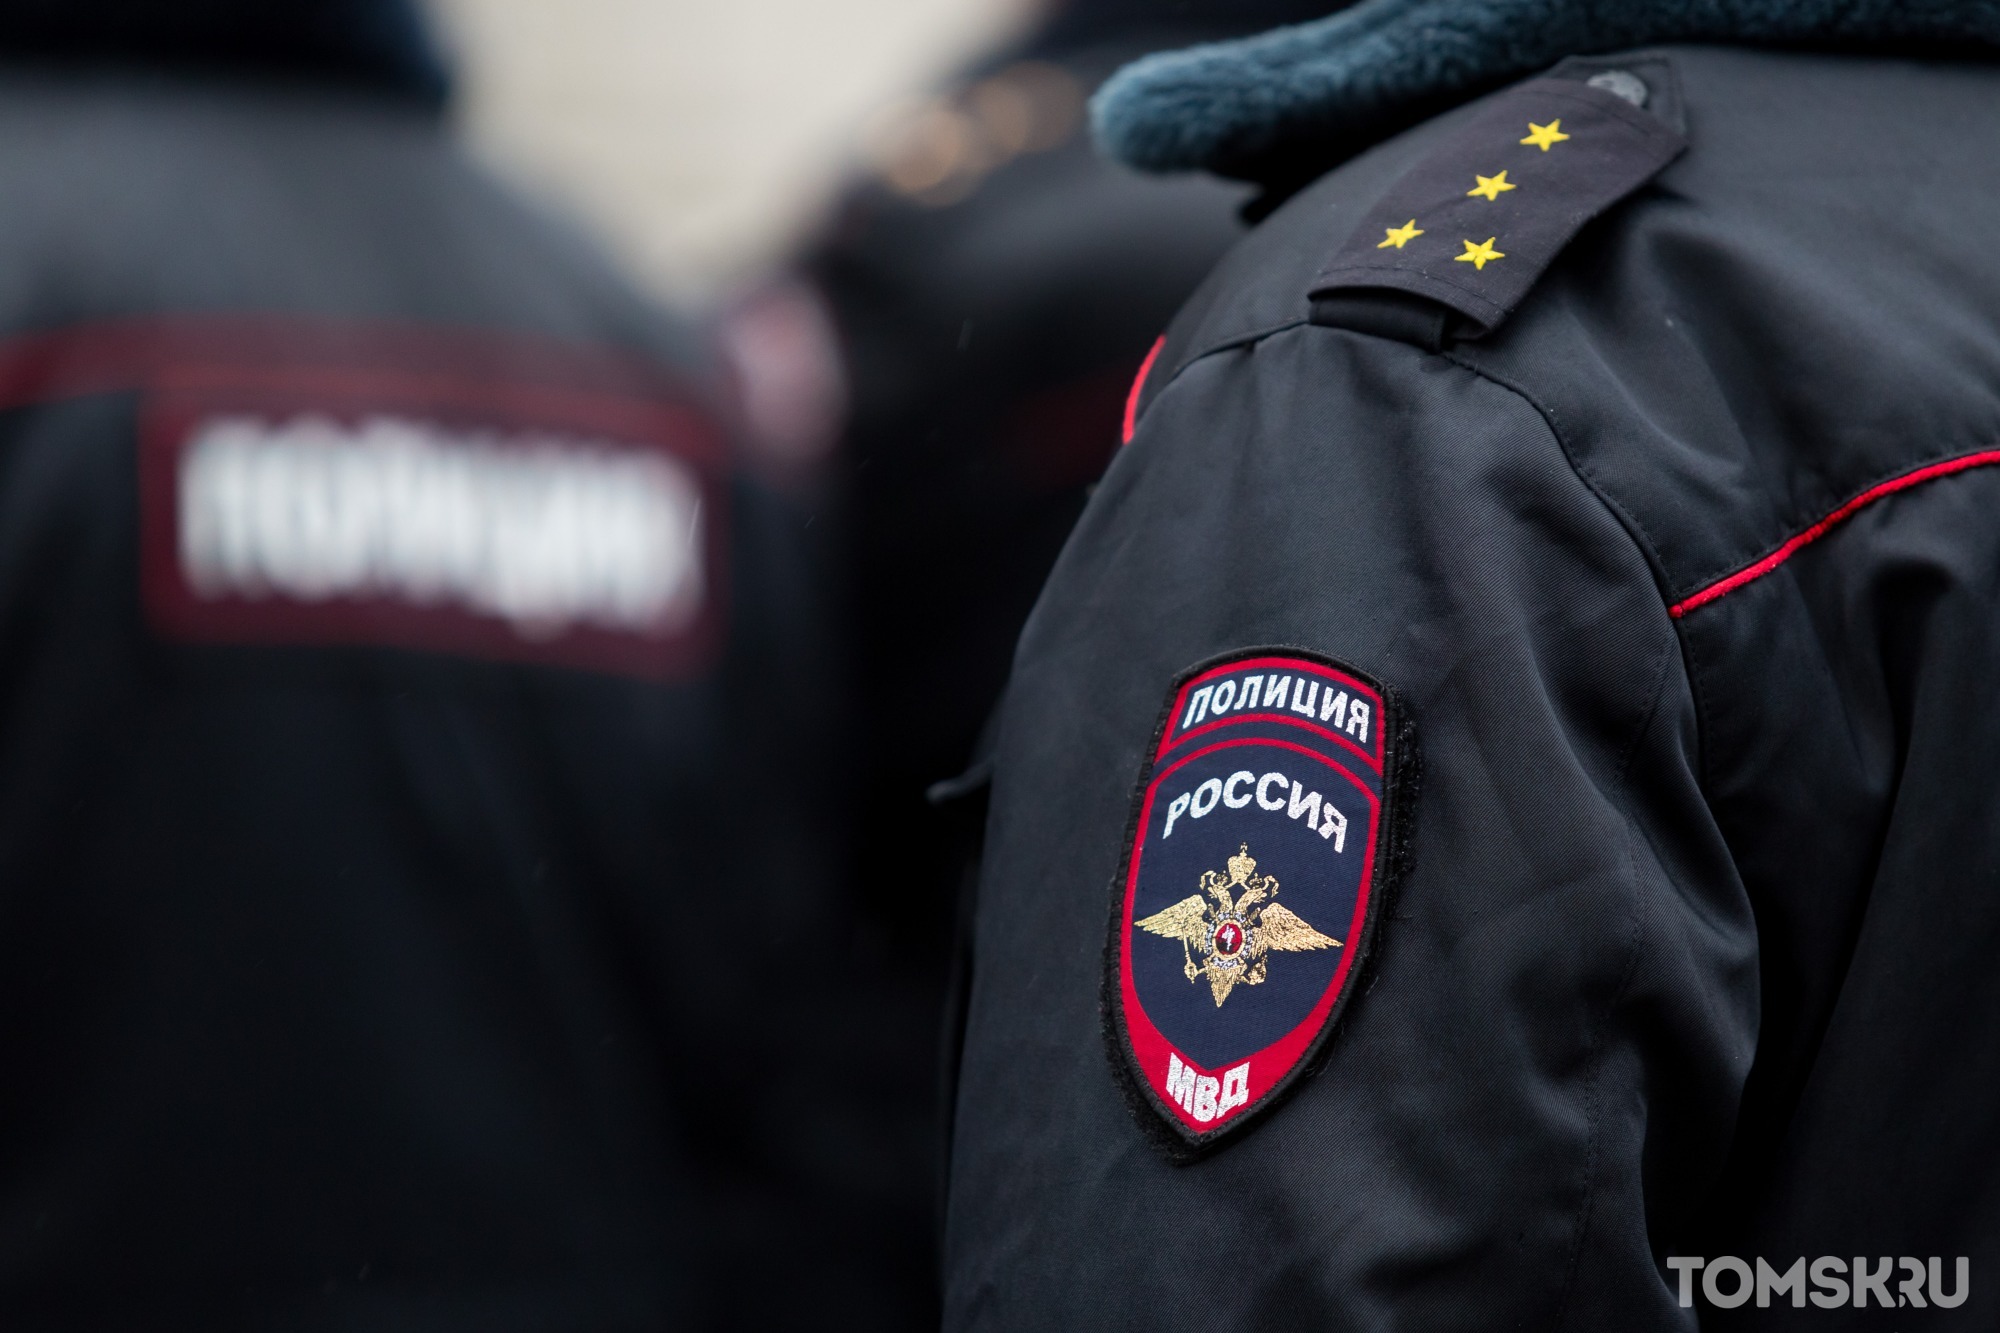 Томская полиция не дала ответ по уголовному делу на жителя региона. Его обвиняют в нападении на хулиганов